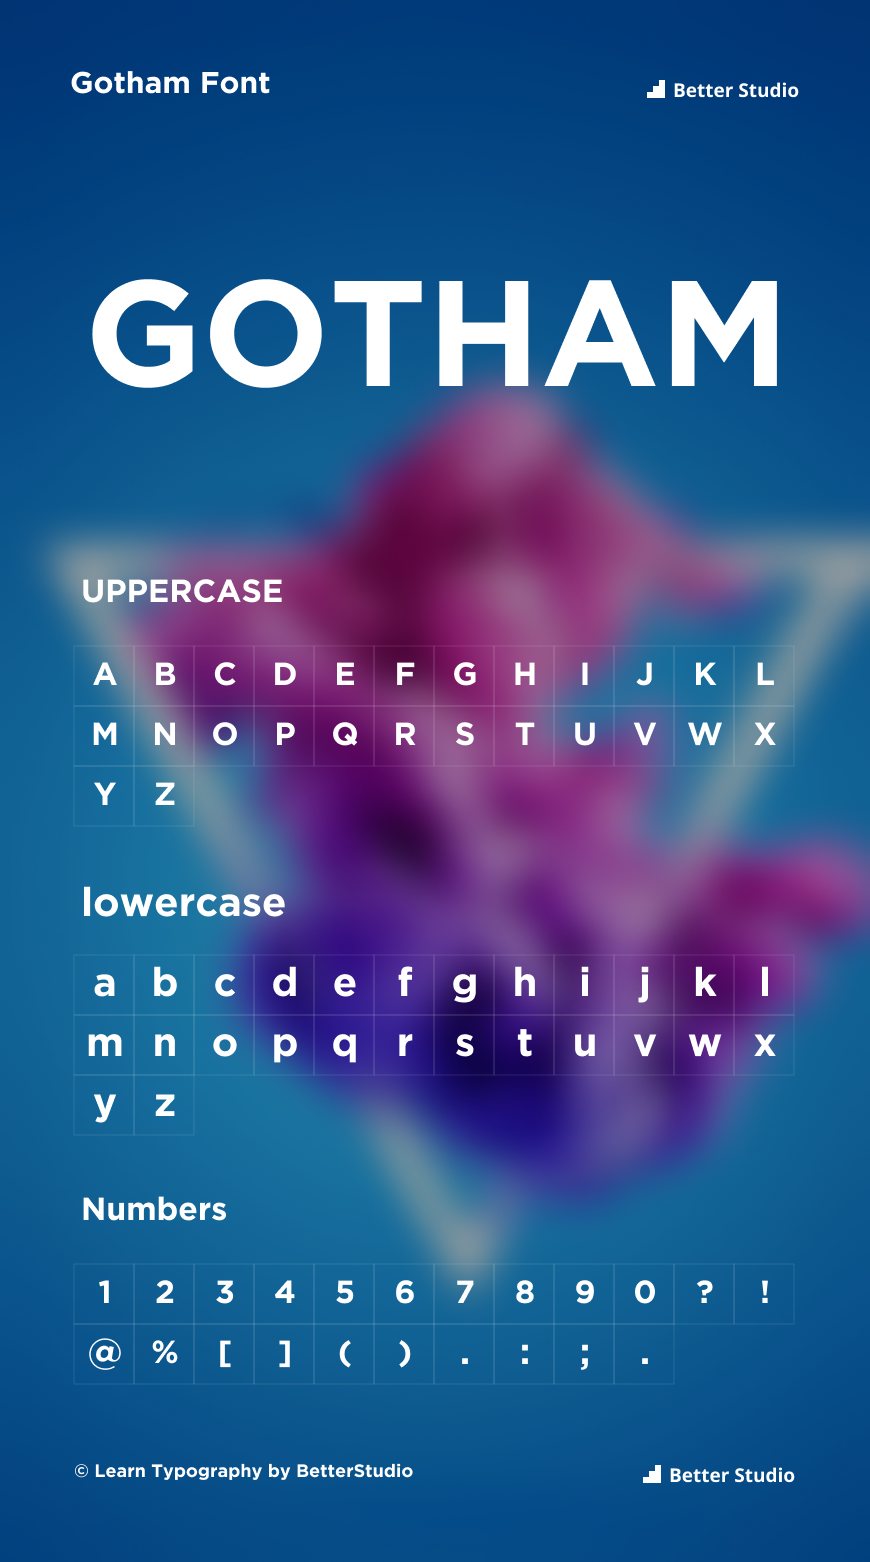 gotham font download free mac